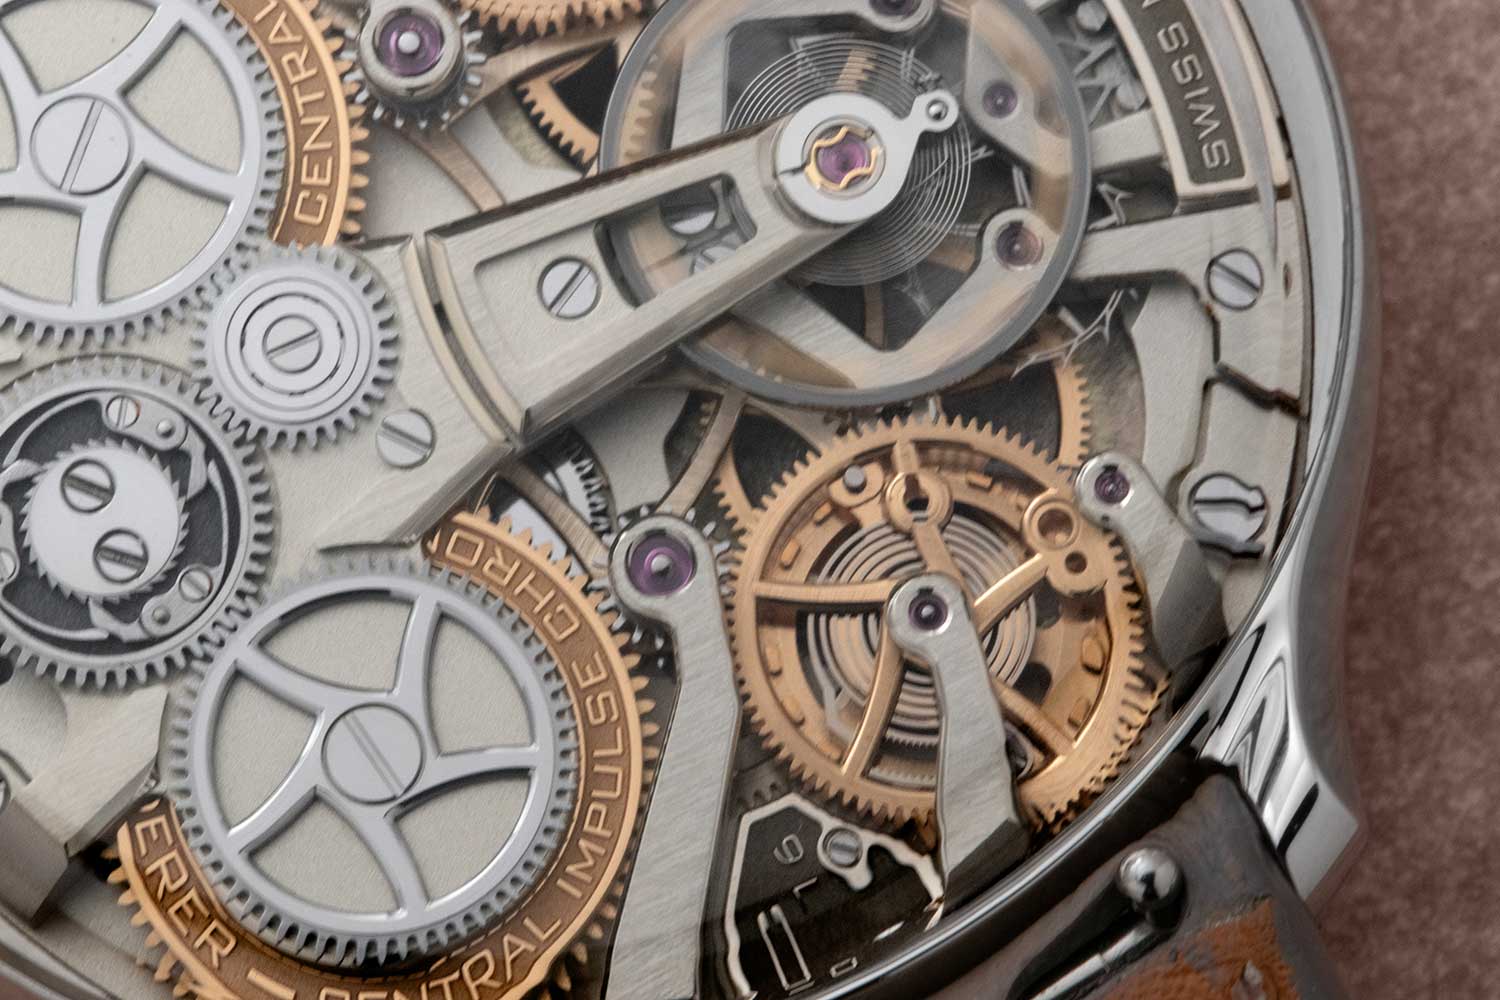 Bernhard Lederer Central Impulse Chronometer 39mm (Image: Revolution©️)